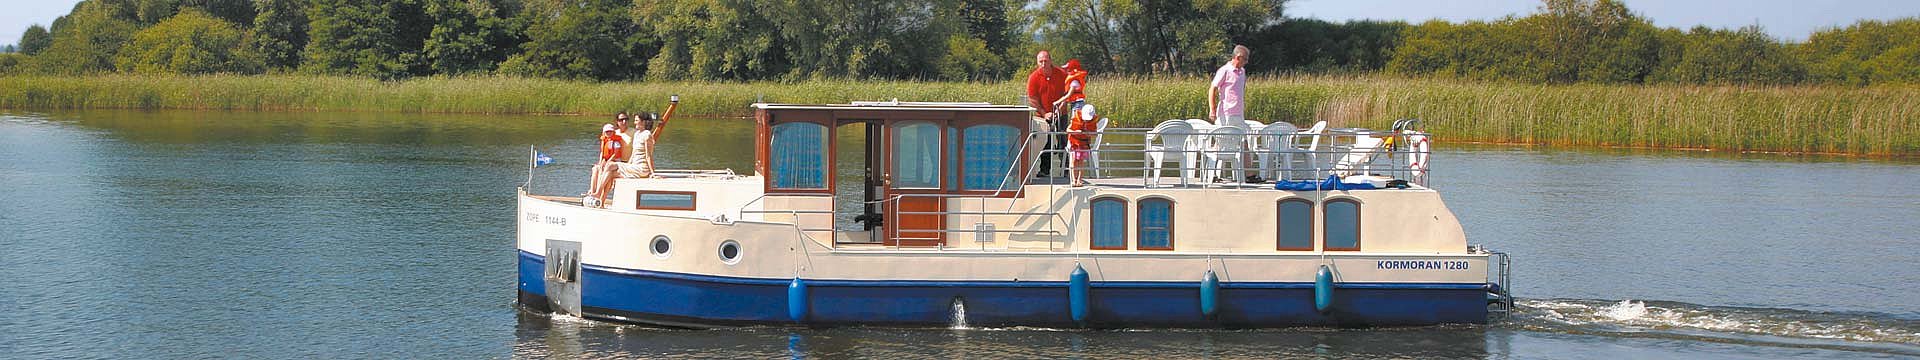 Das Hausboot Kormoran 1280 bringt zwei Männer sicher in die fischreichen Buchten zum Angeln.